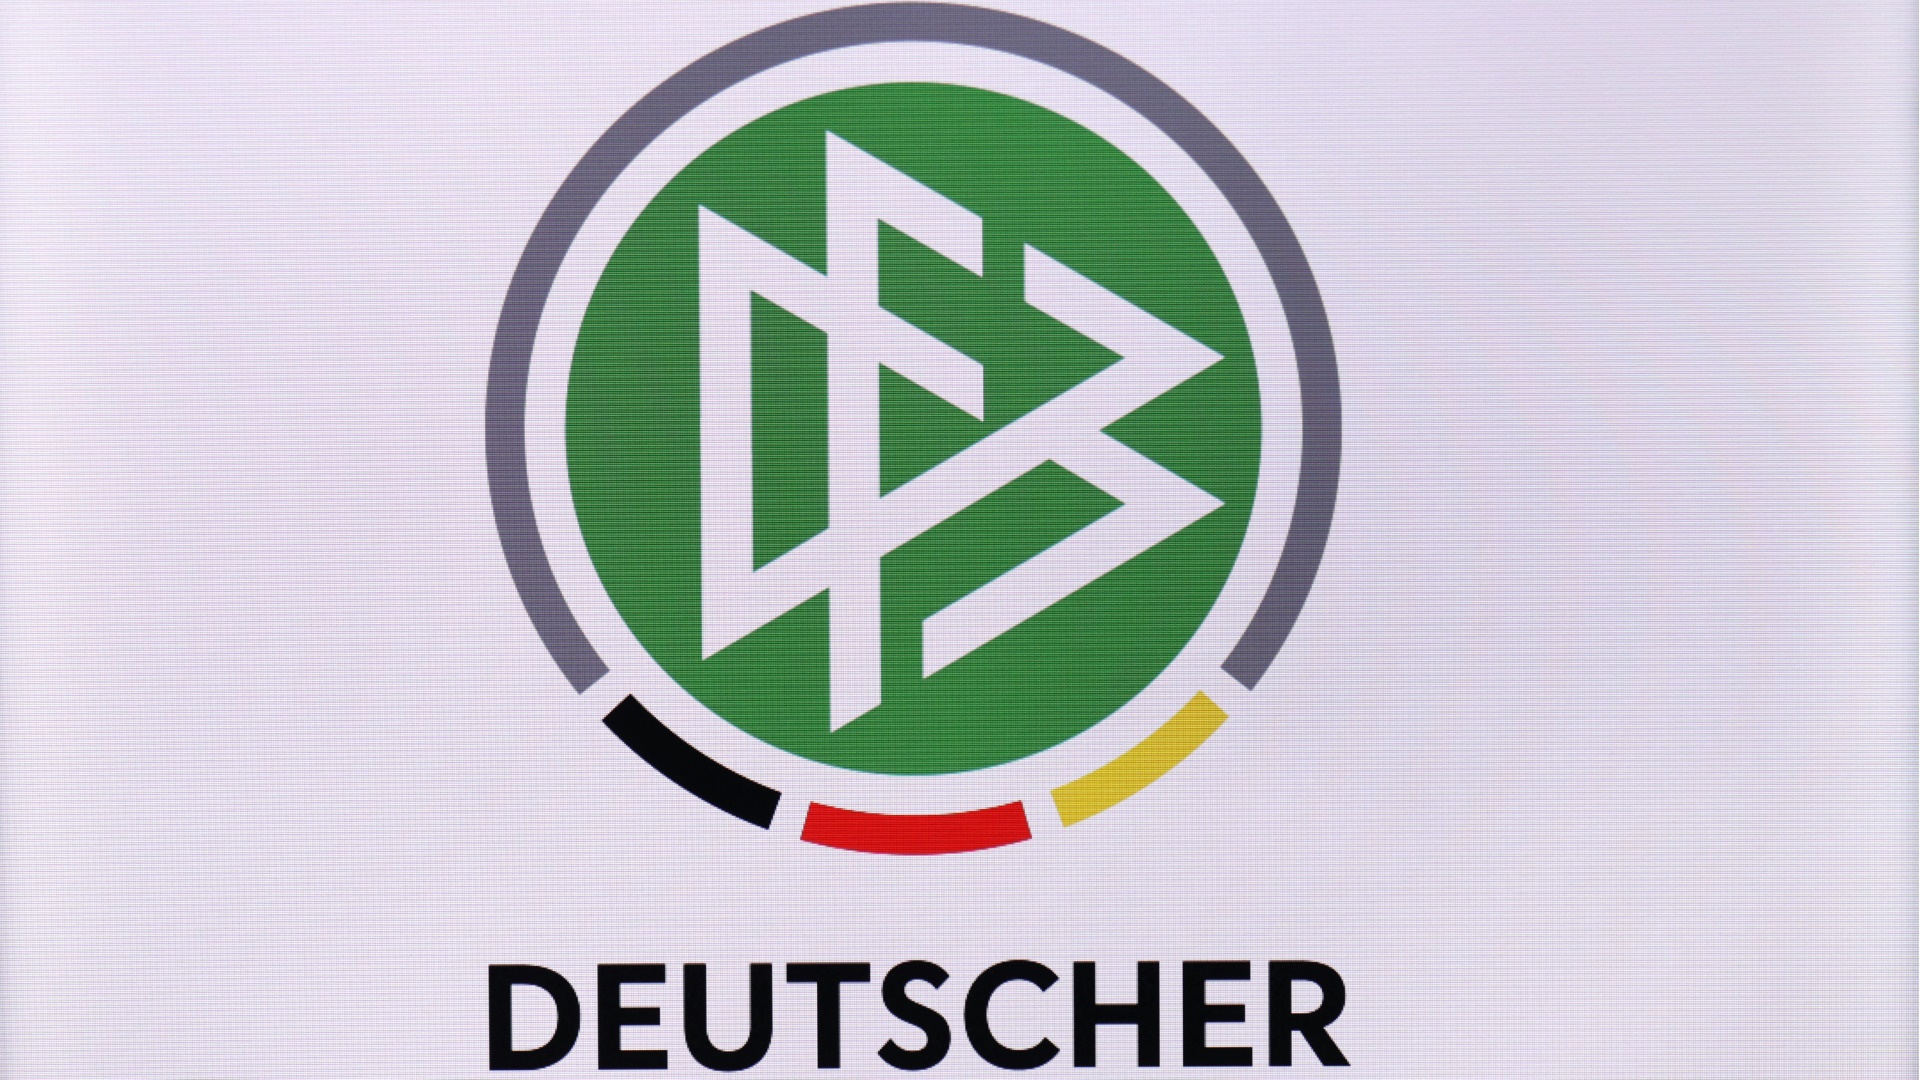 Der DFB startet die Aktion "DFB-Punktspiel"